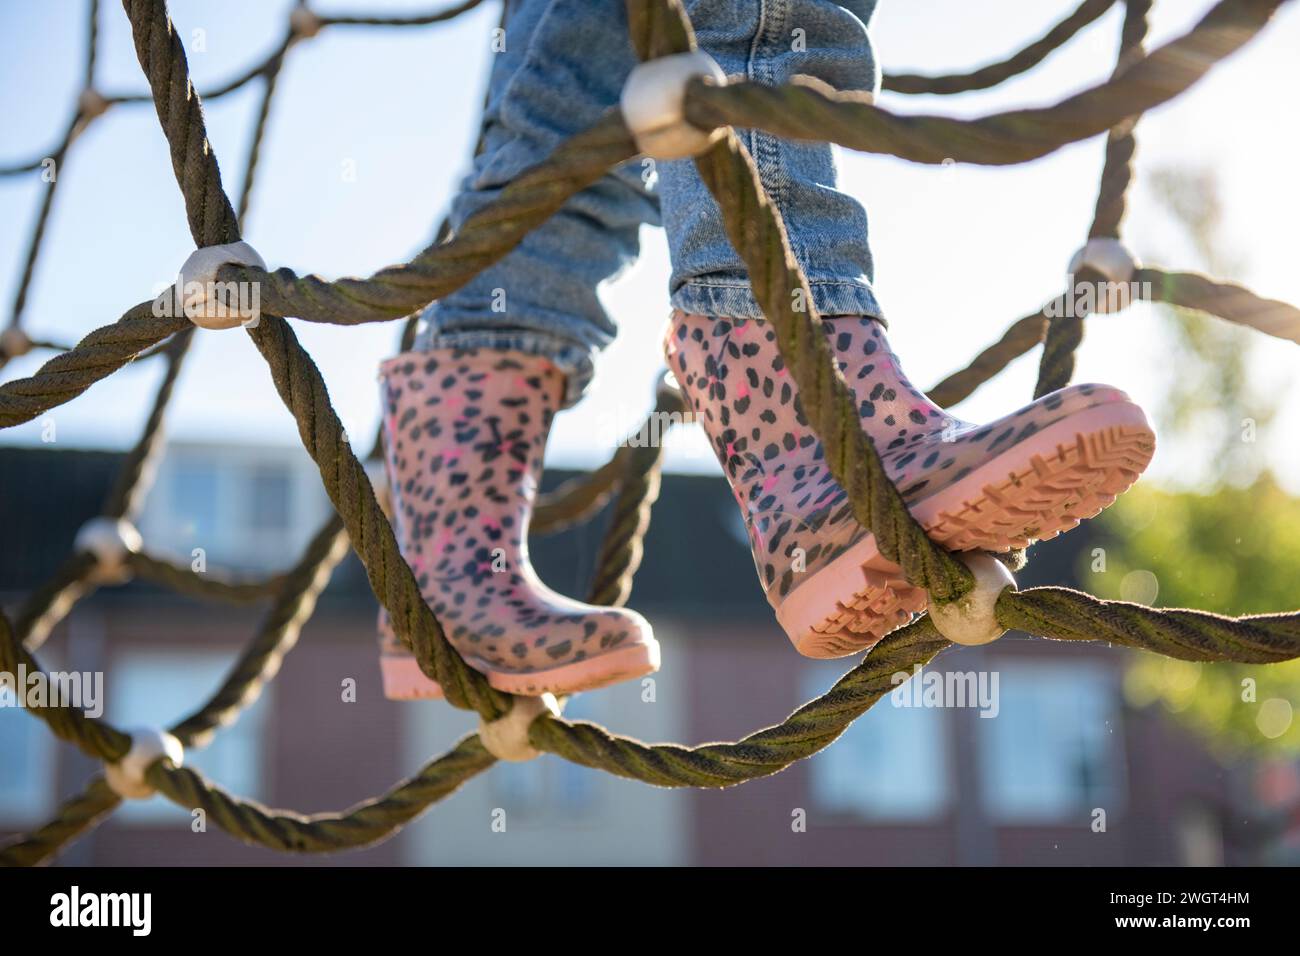 La bambina è coraggiosa ad arrampicarsi in un parco avventura nel parco pubblico Foto Stock